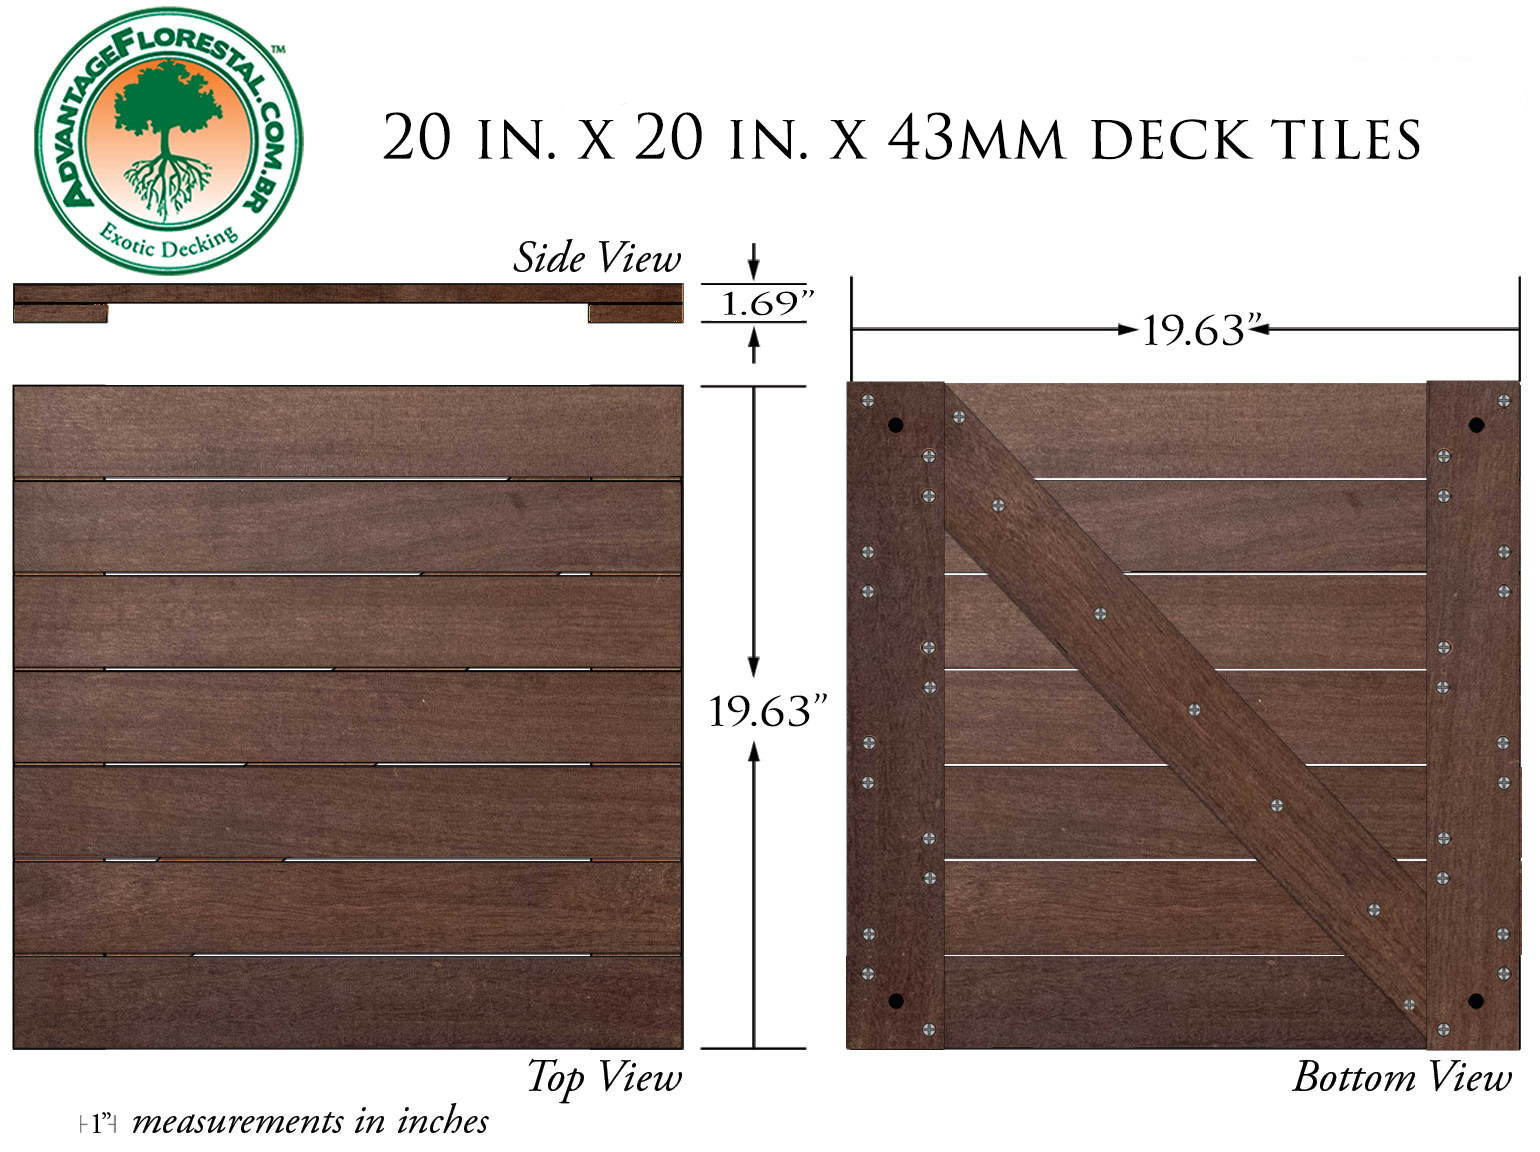 IPE Deck Tile 20 in. x 20 in. x 43mm